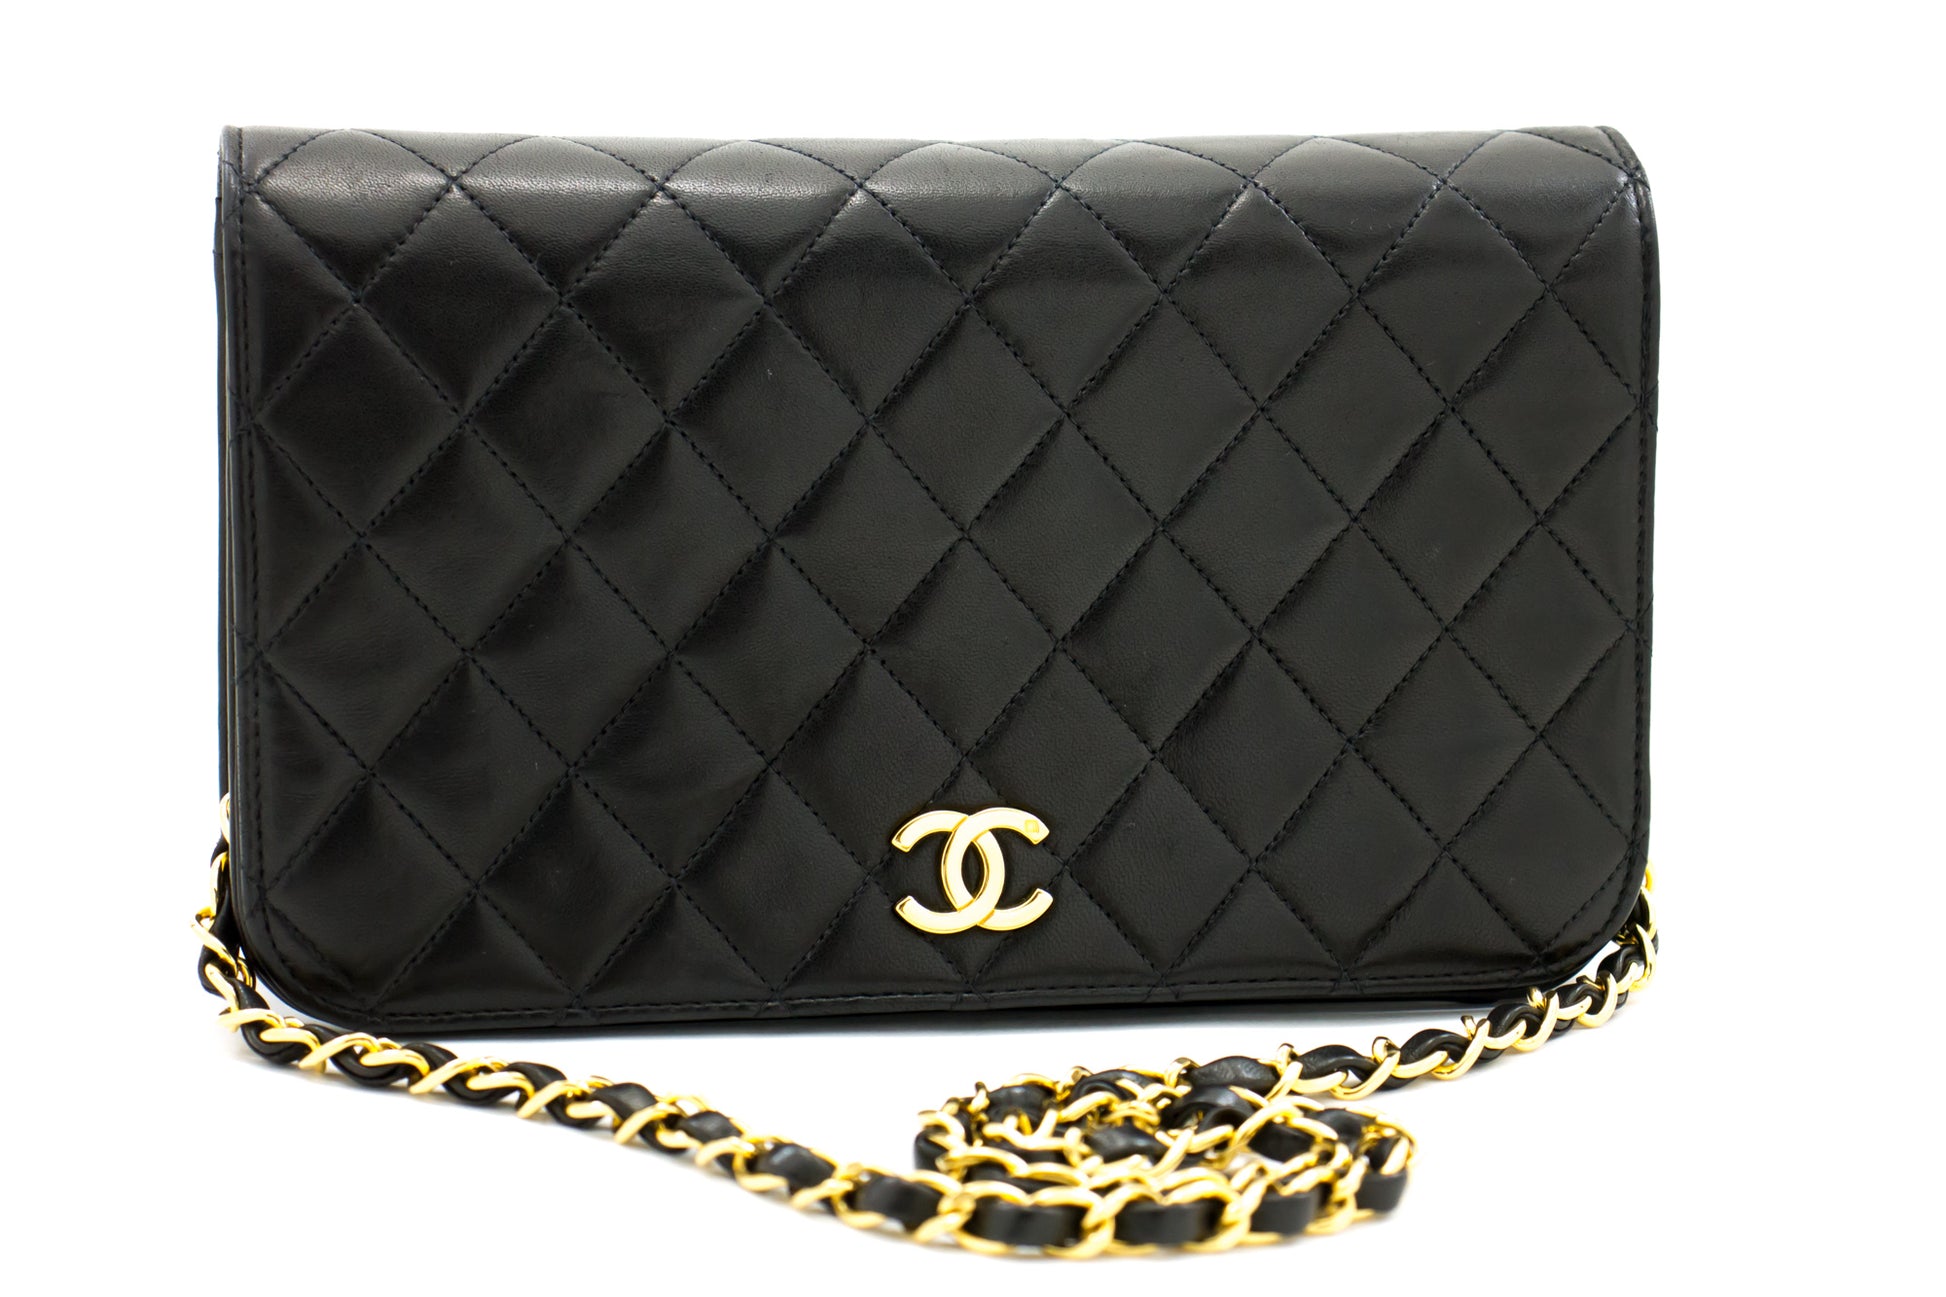 Chanel Sac à Rabat Leather Shoulder Bag